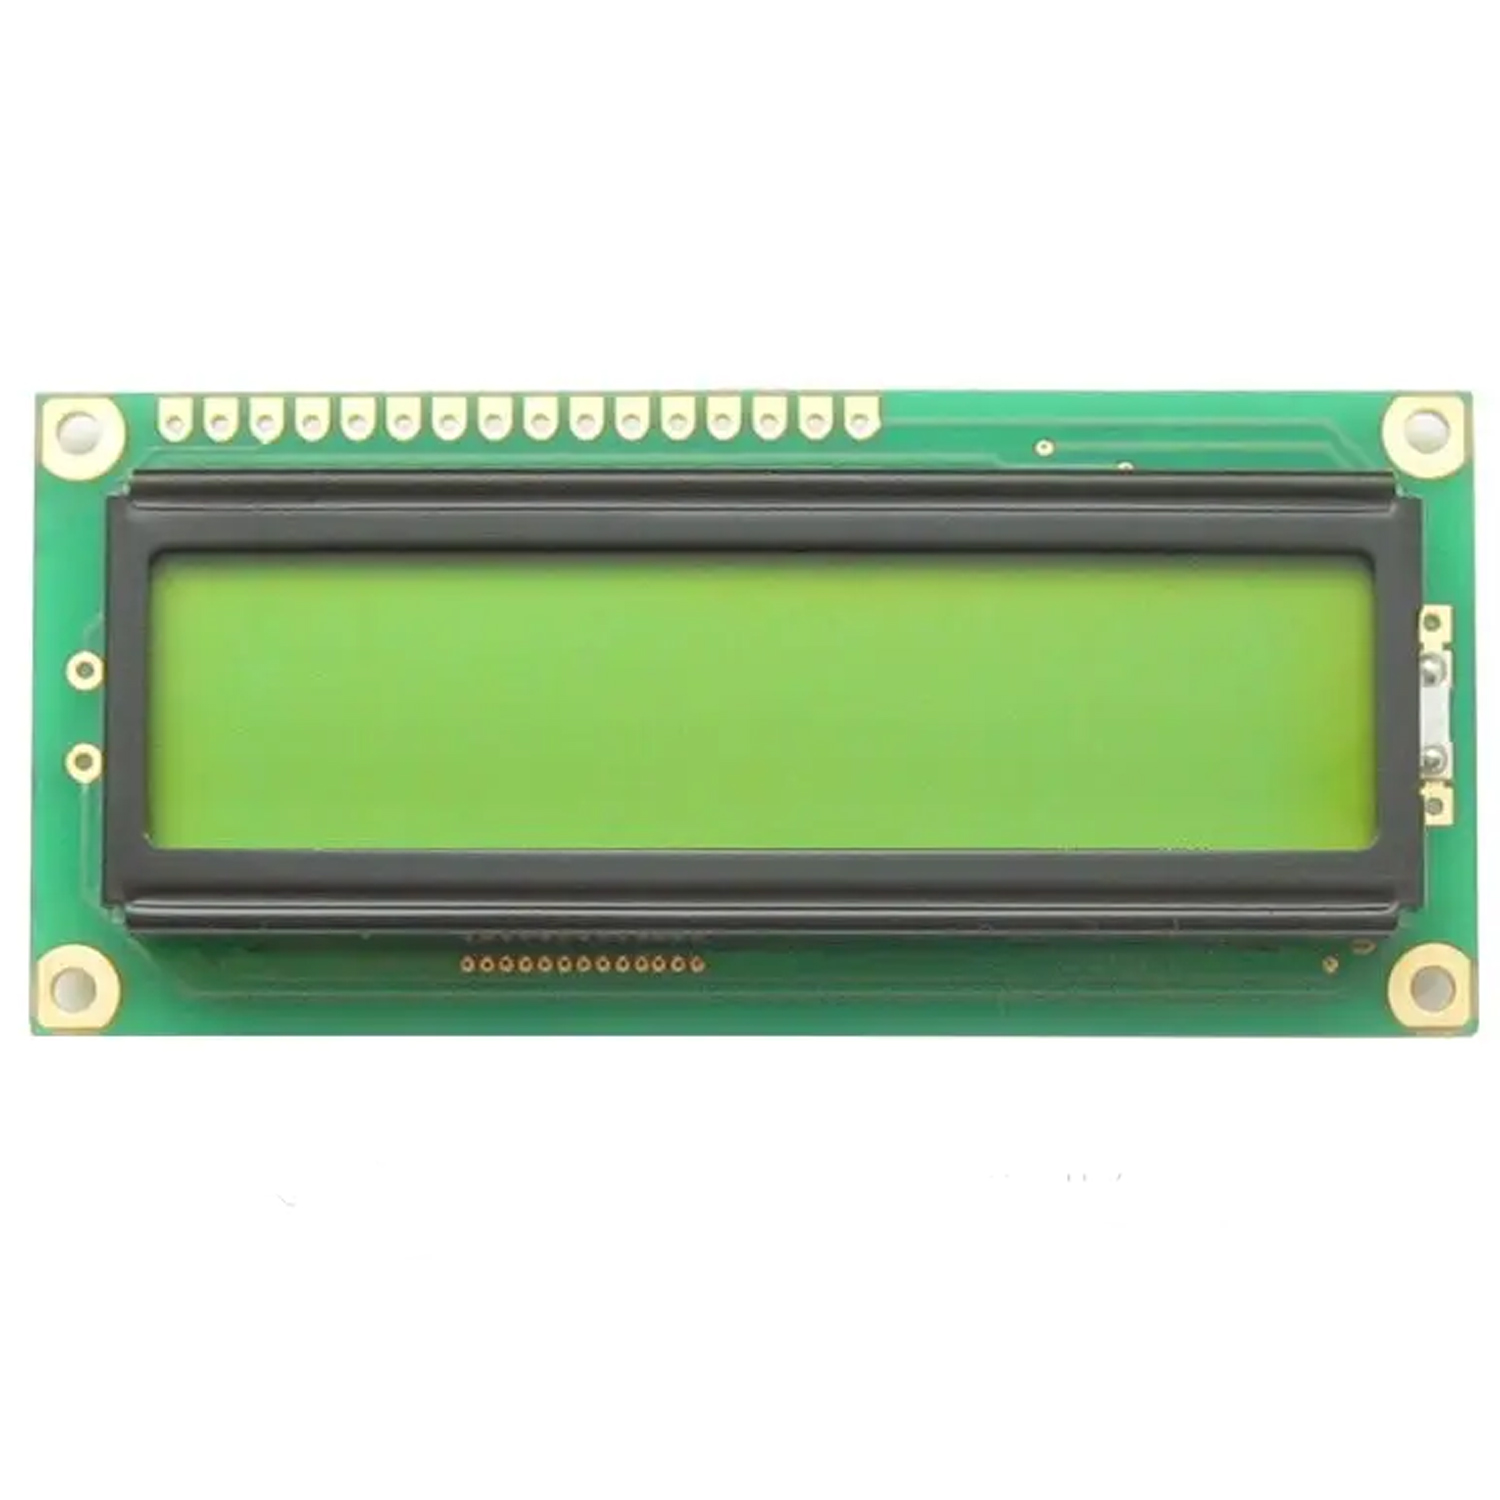 LCD 1602 символьный дисплей 16x2 (зеленый), фото